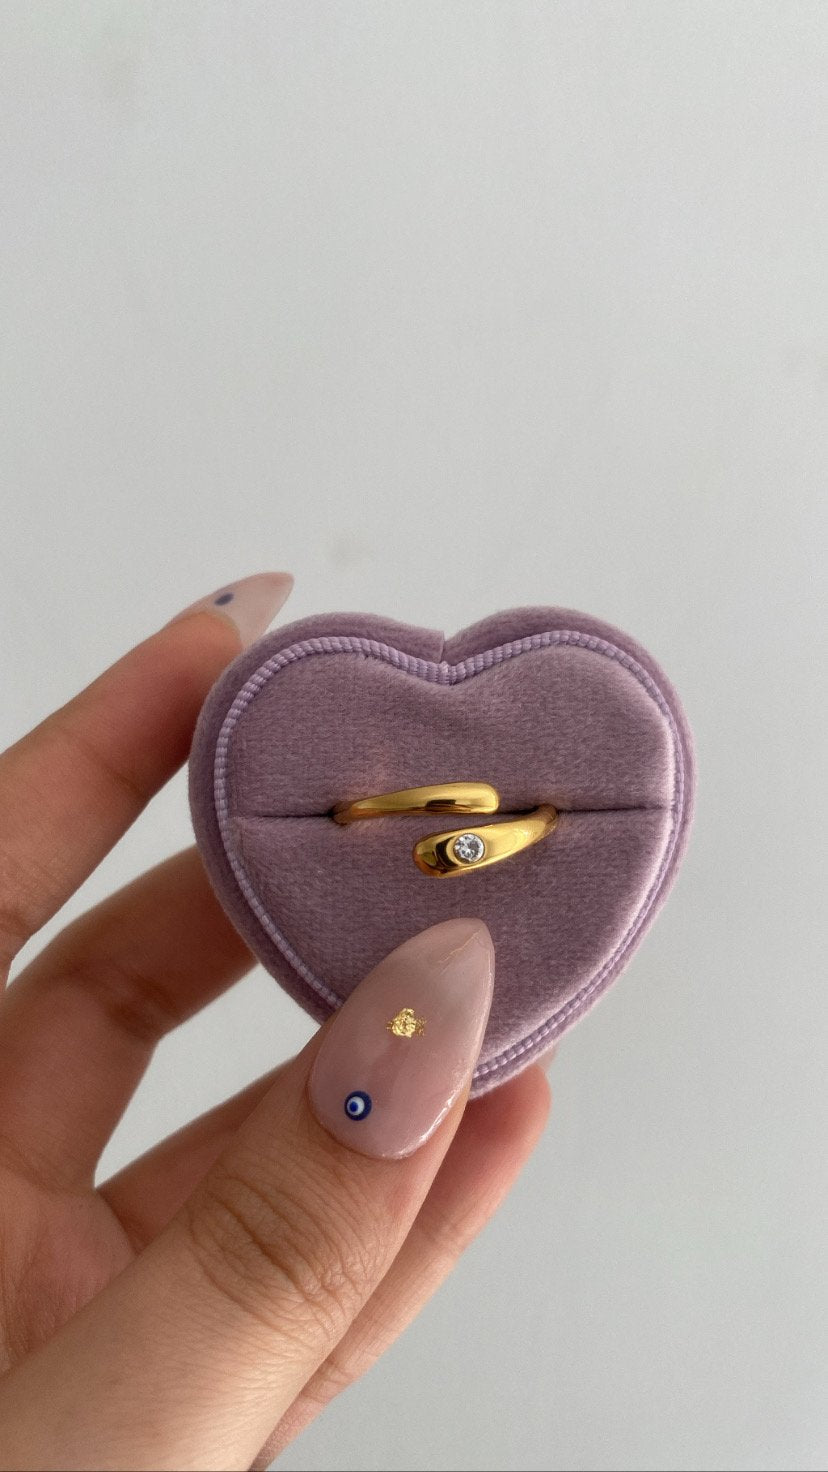 Anastasia ring